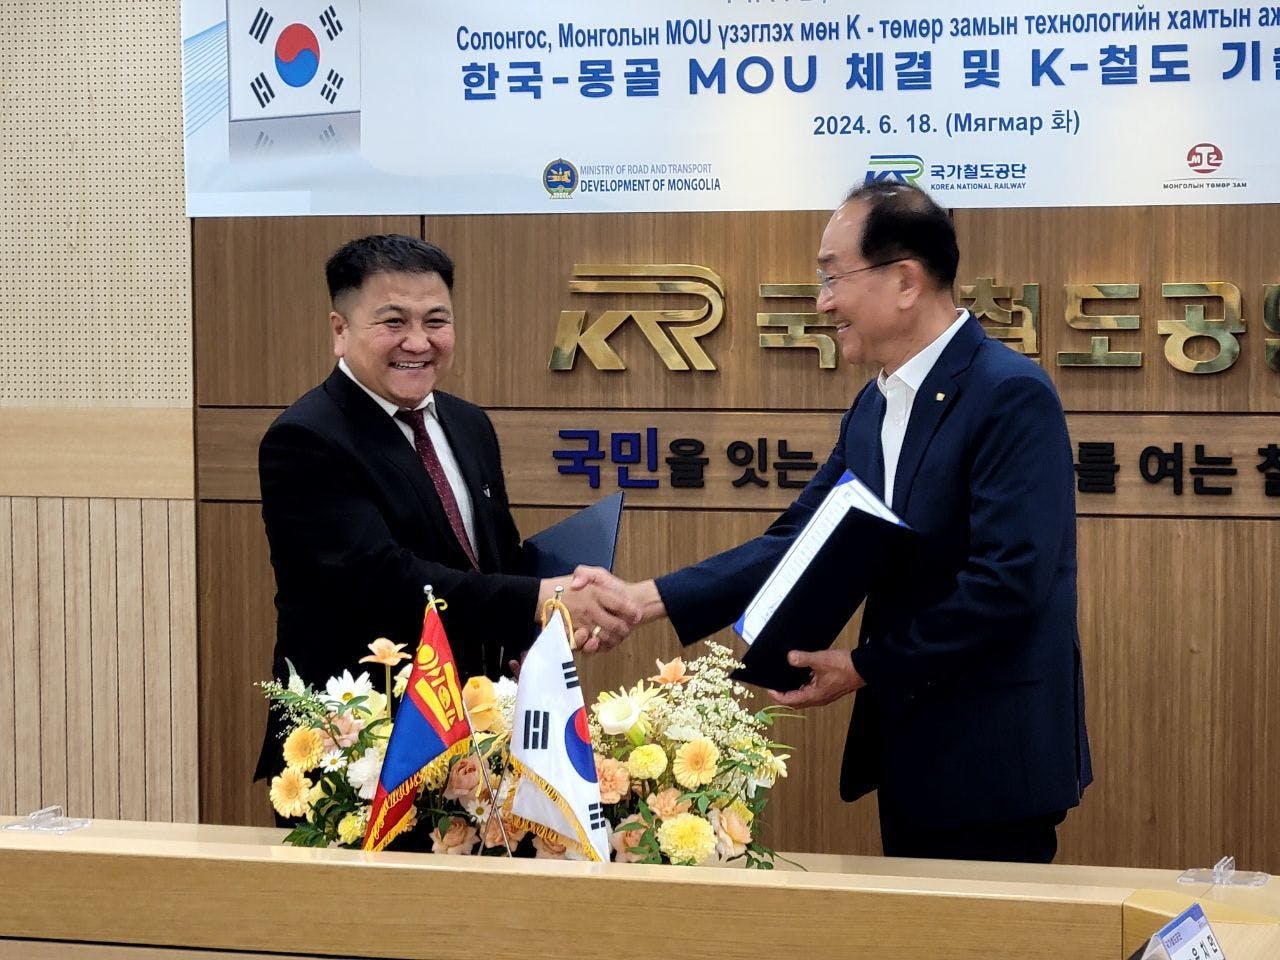 "MONGOLIAN RAILWAY" SOSC SIGNED A MEMORANDUM OF UNDERSTANDING WITH "KOREA NATIONAL RAILWAY" SOSC